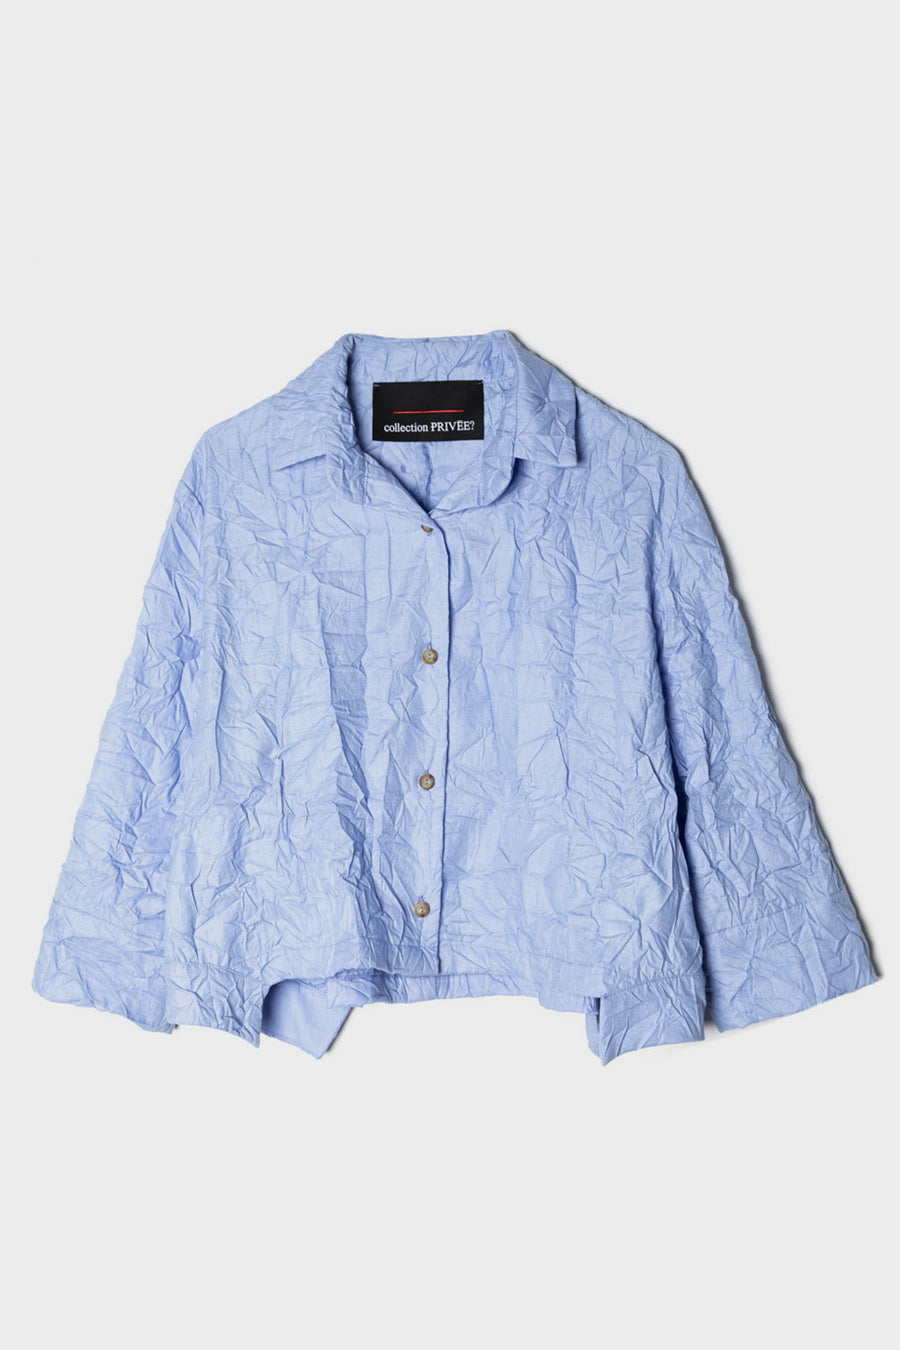 Camicia Collection Privee in tessuto stropicciato azzurro ra1002